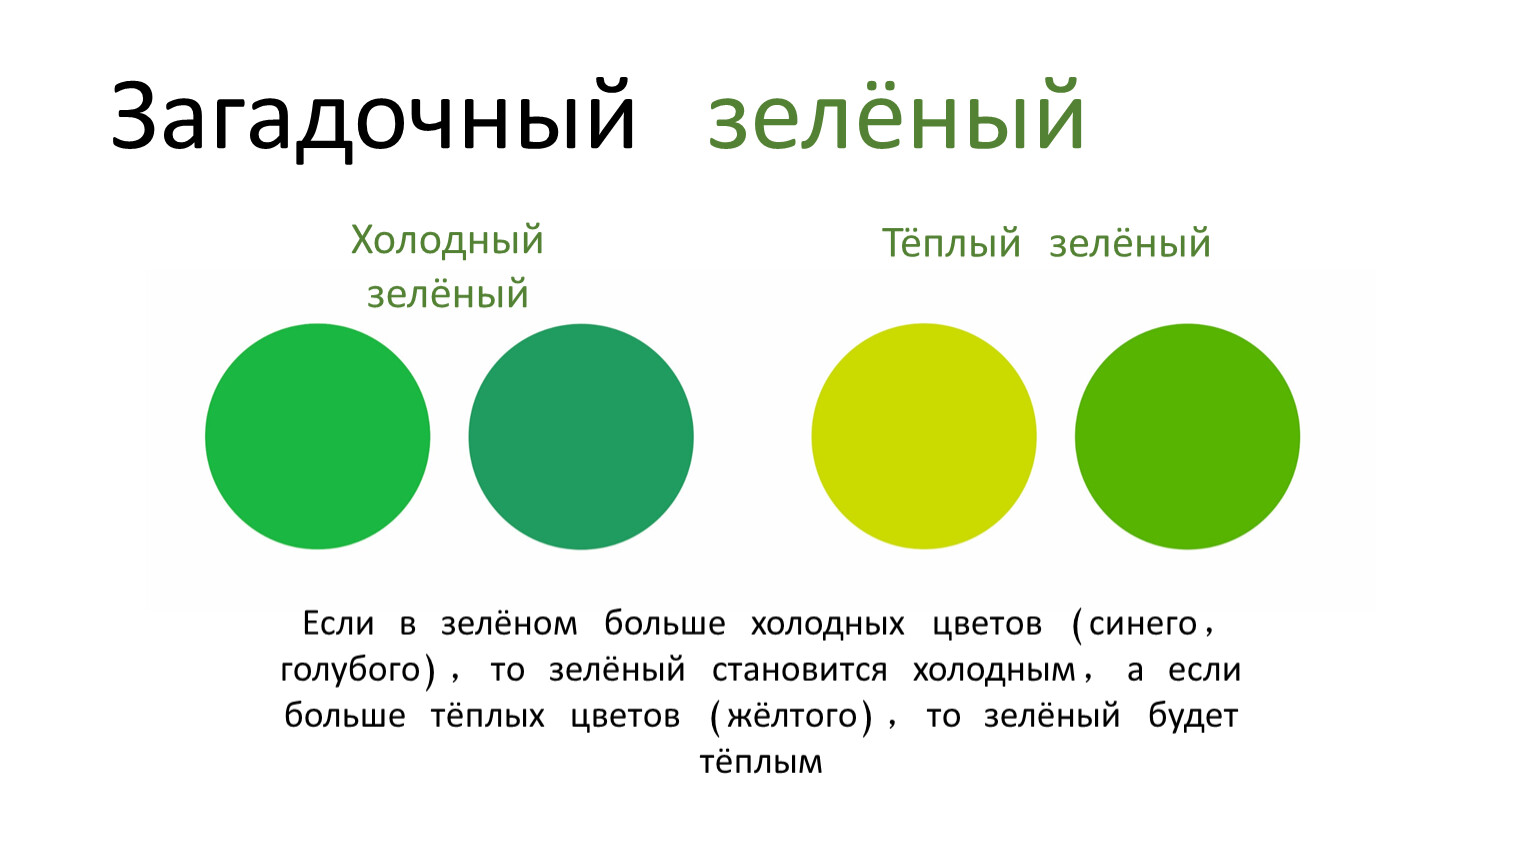 К оттенкам зеленого цвета относится. Теплые и холодные оттенки зеленого. Теплый зеленый цвет. Холодный зеленый цвет. Зеленый цвет холодный и теплый.